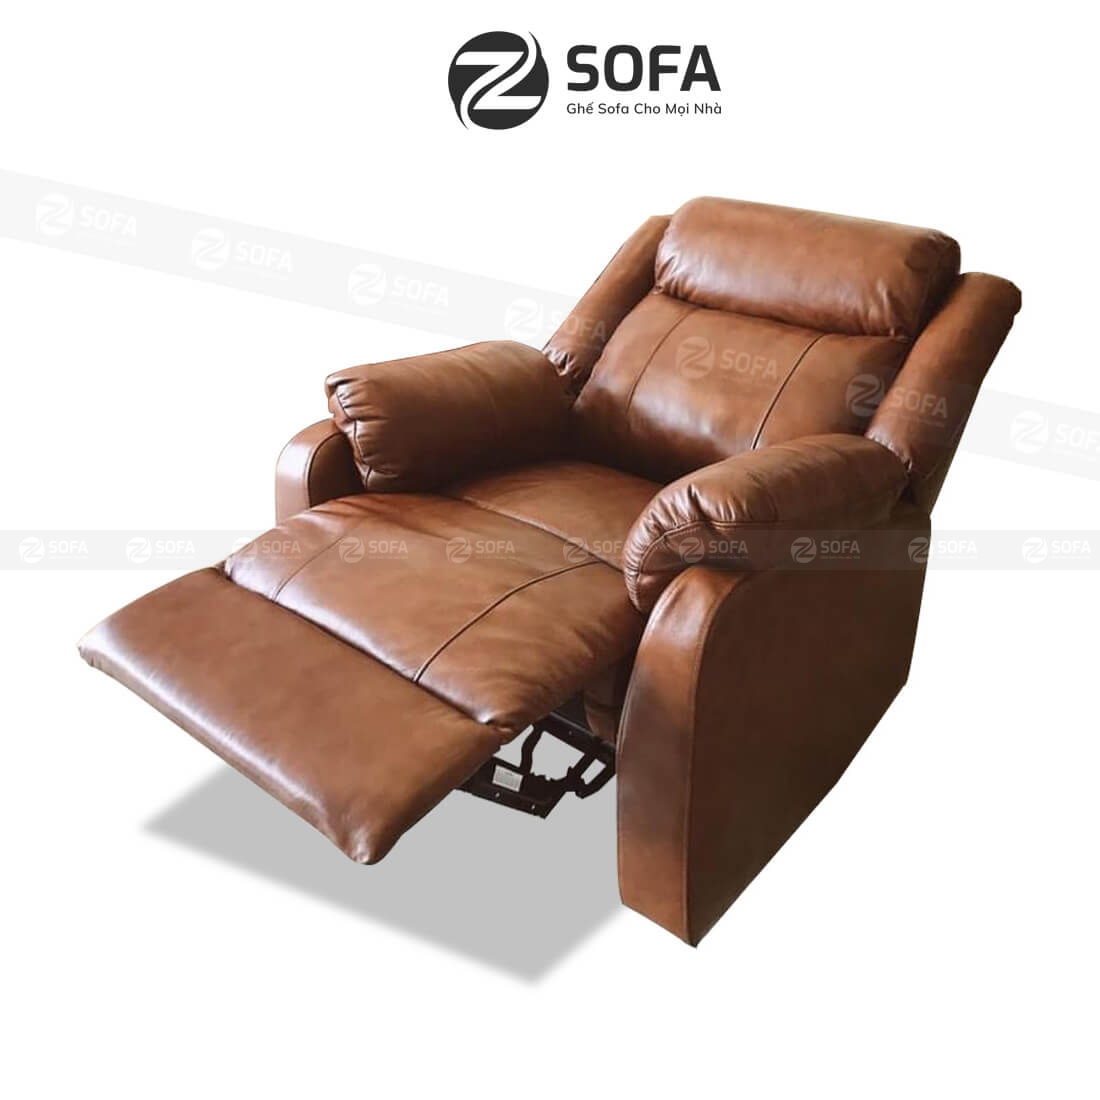 Chọn mua những bộ ghế sofa nằm ấm áp cho gia đình